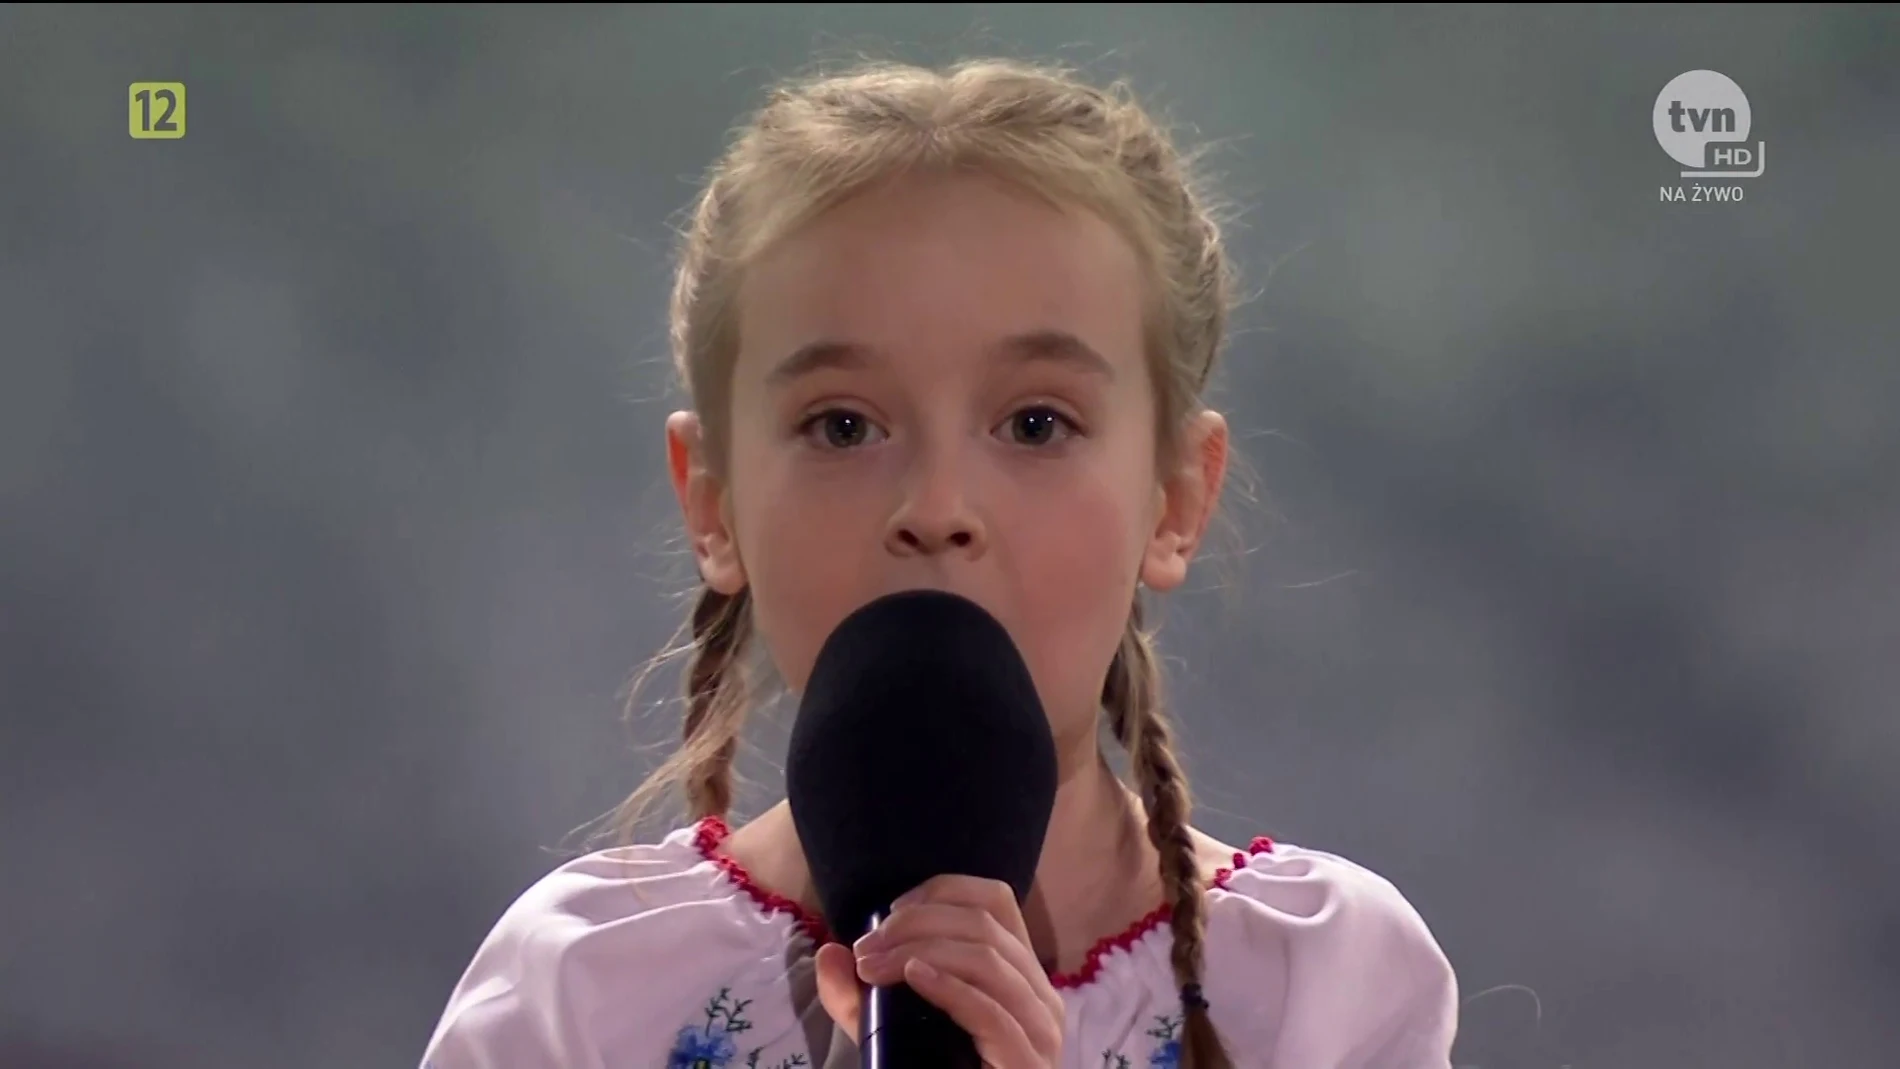 La increíble historia de una niña refugiada: De cantar en un búnker a un concierto multitudinario